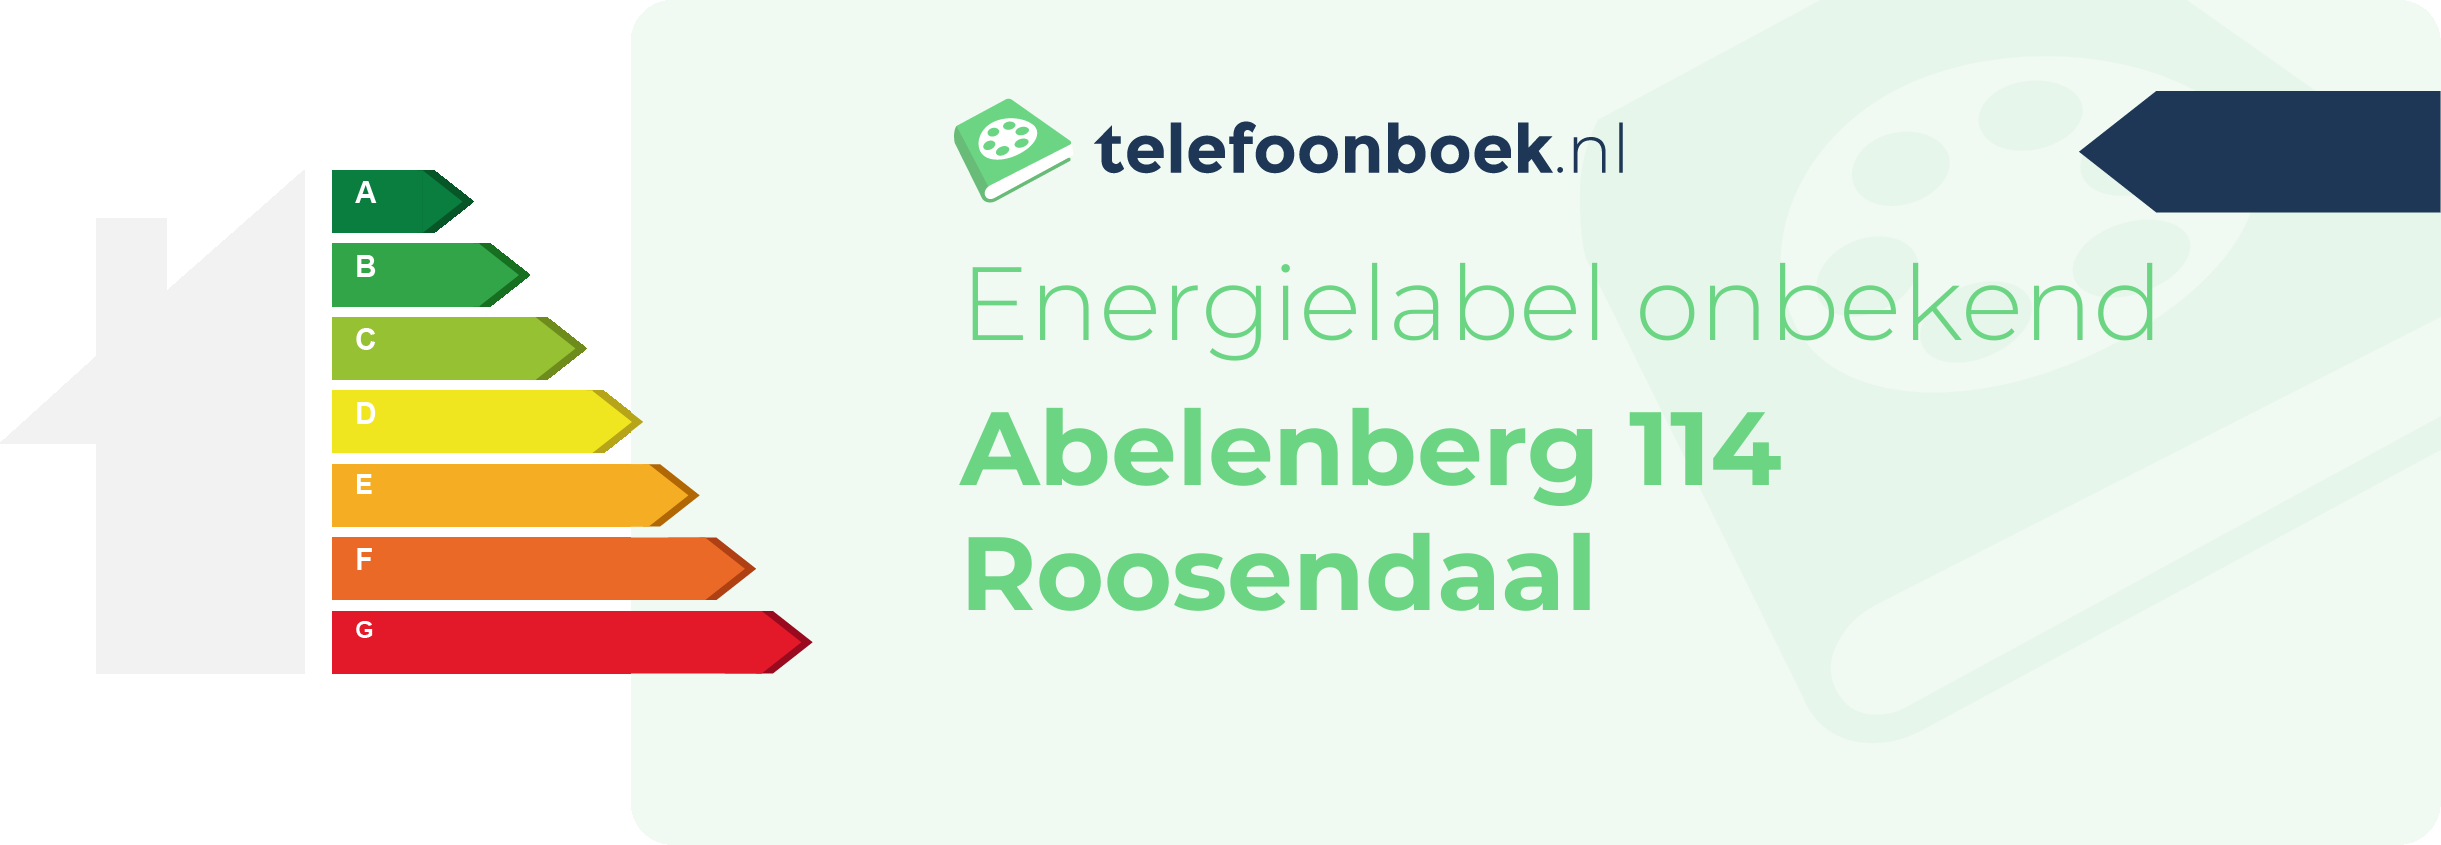 Energielabel Abelenberg 114 Roosendaal